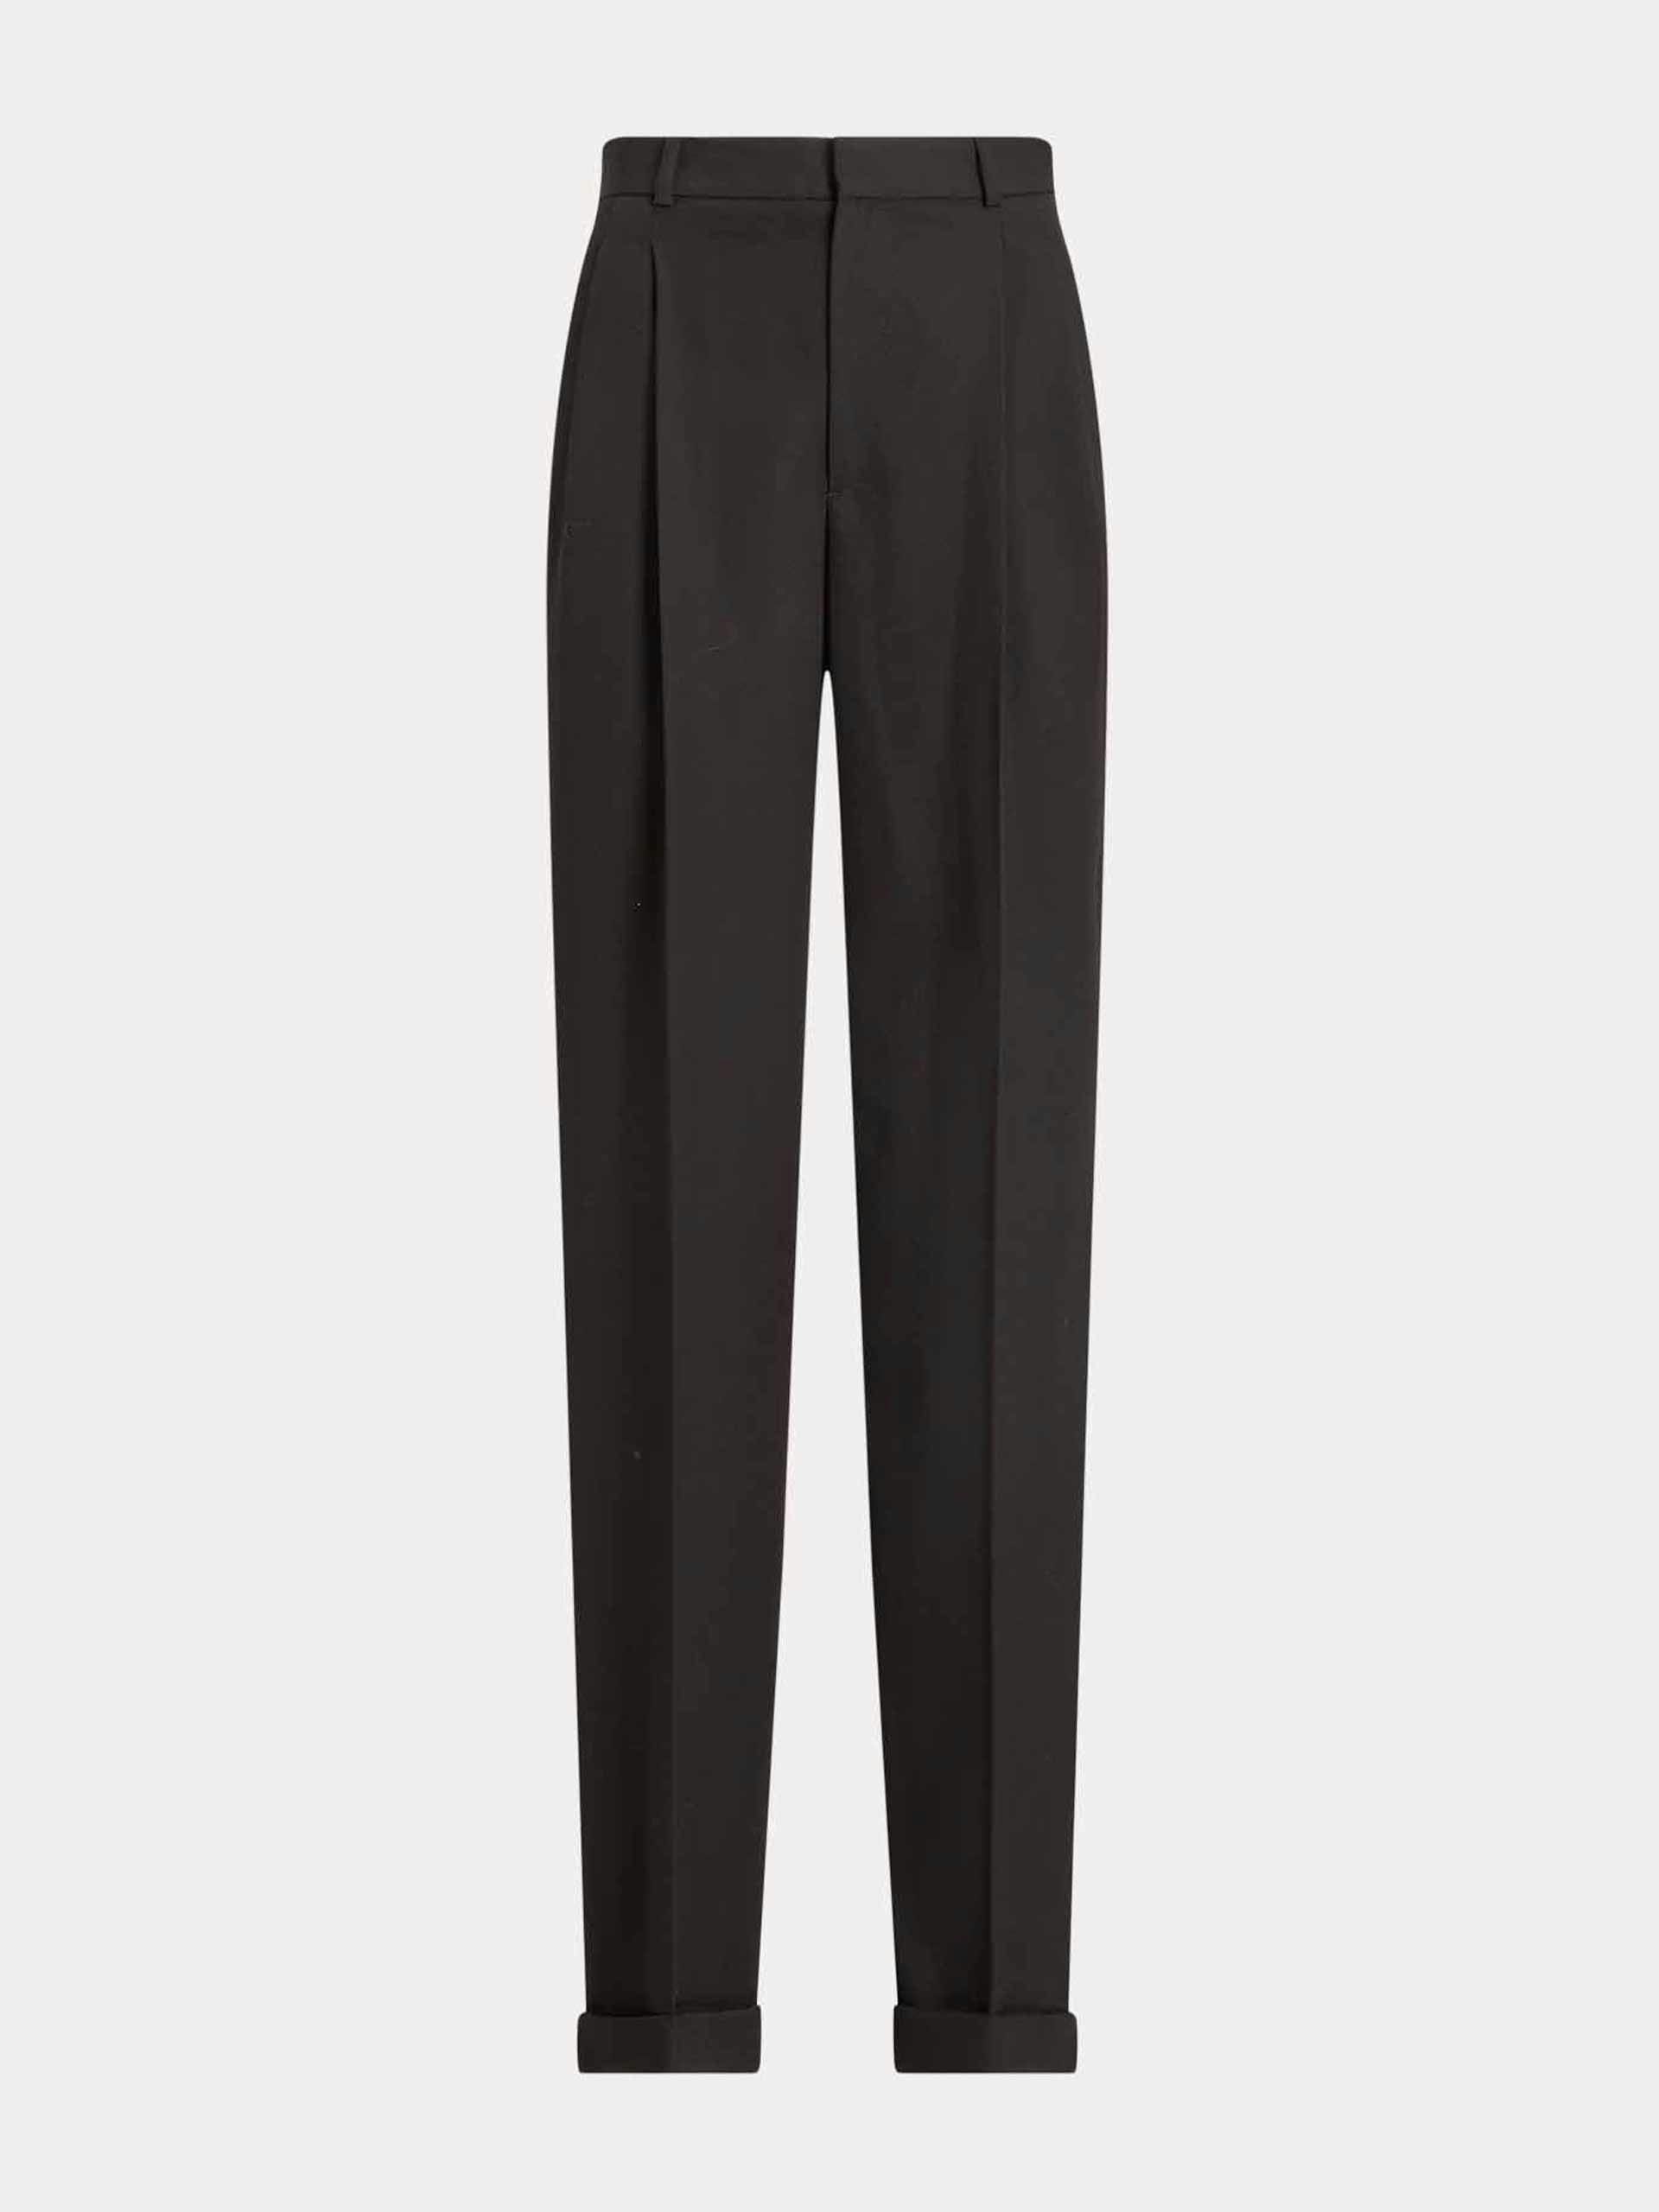 Pleated wool wide-leg tuxedo trouser